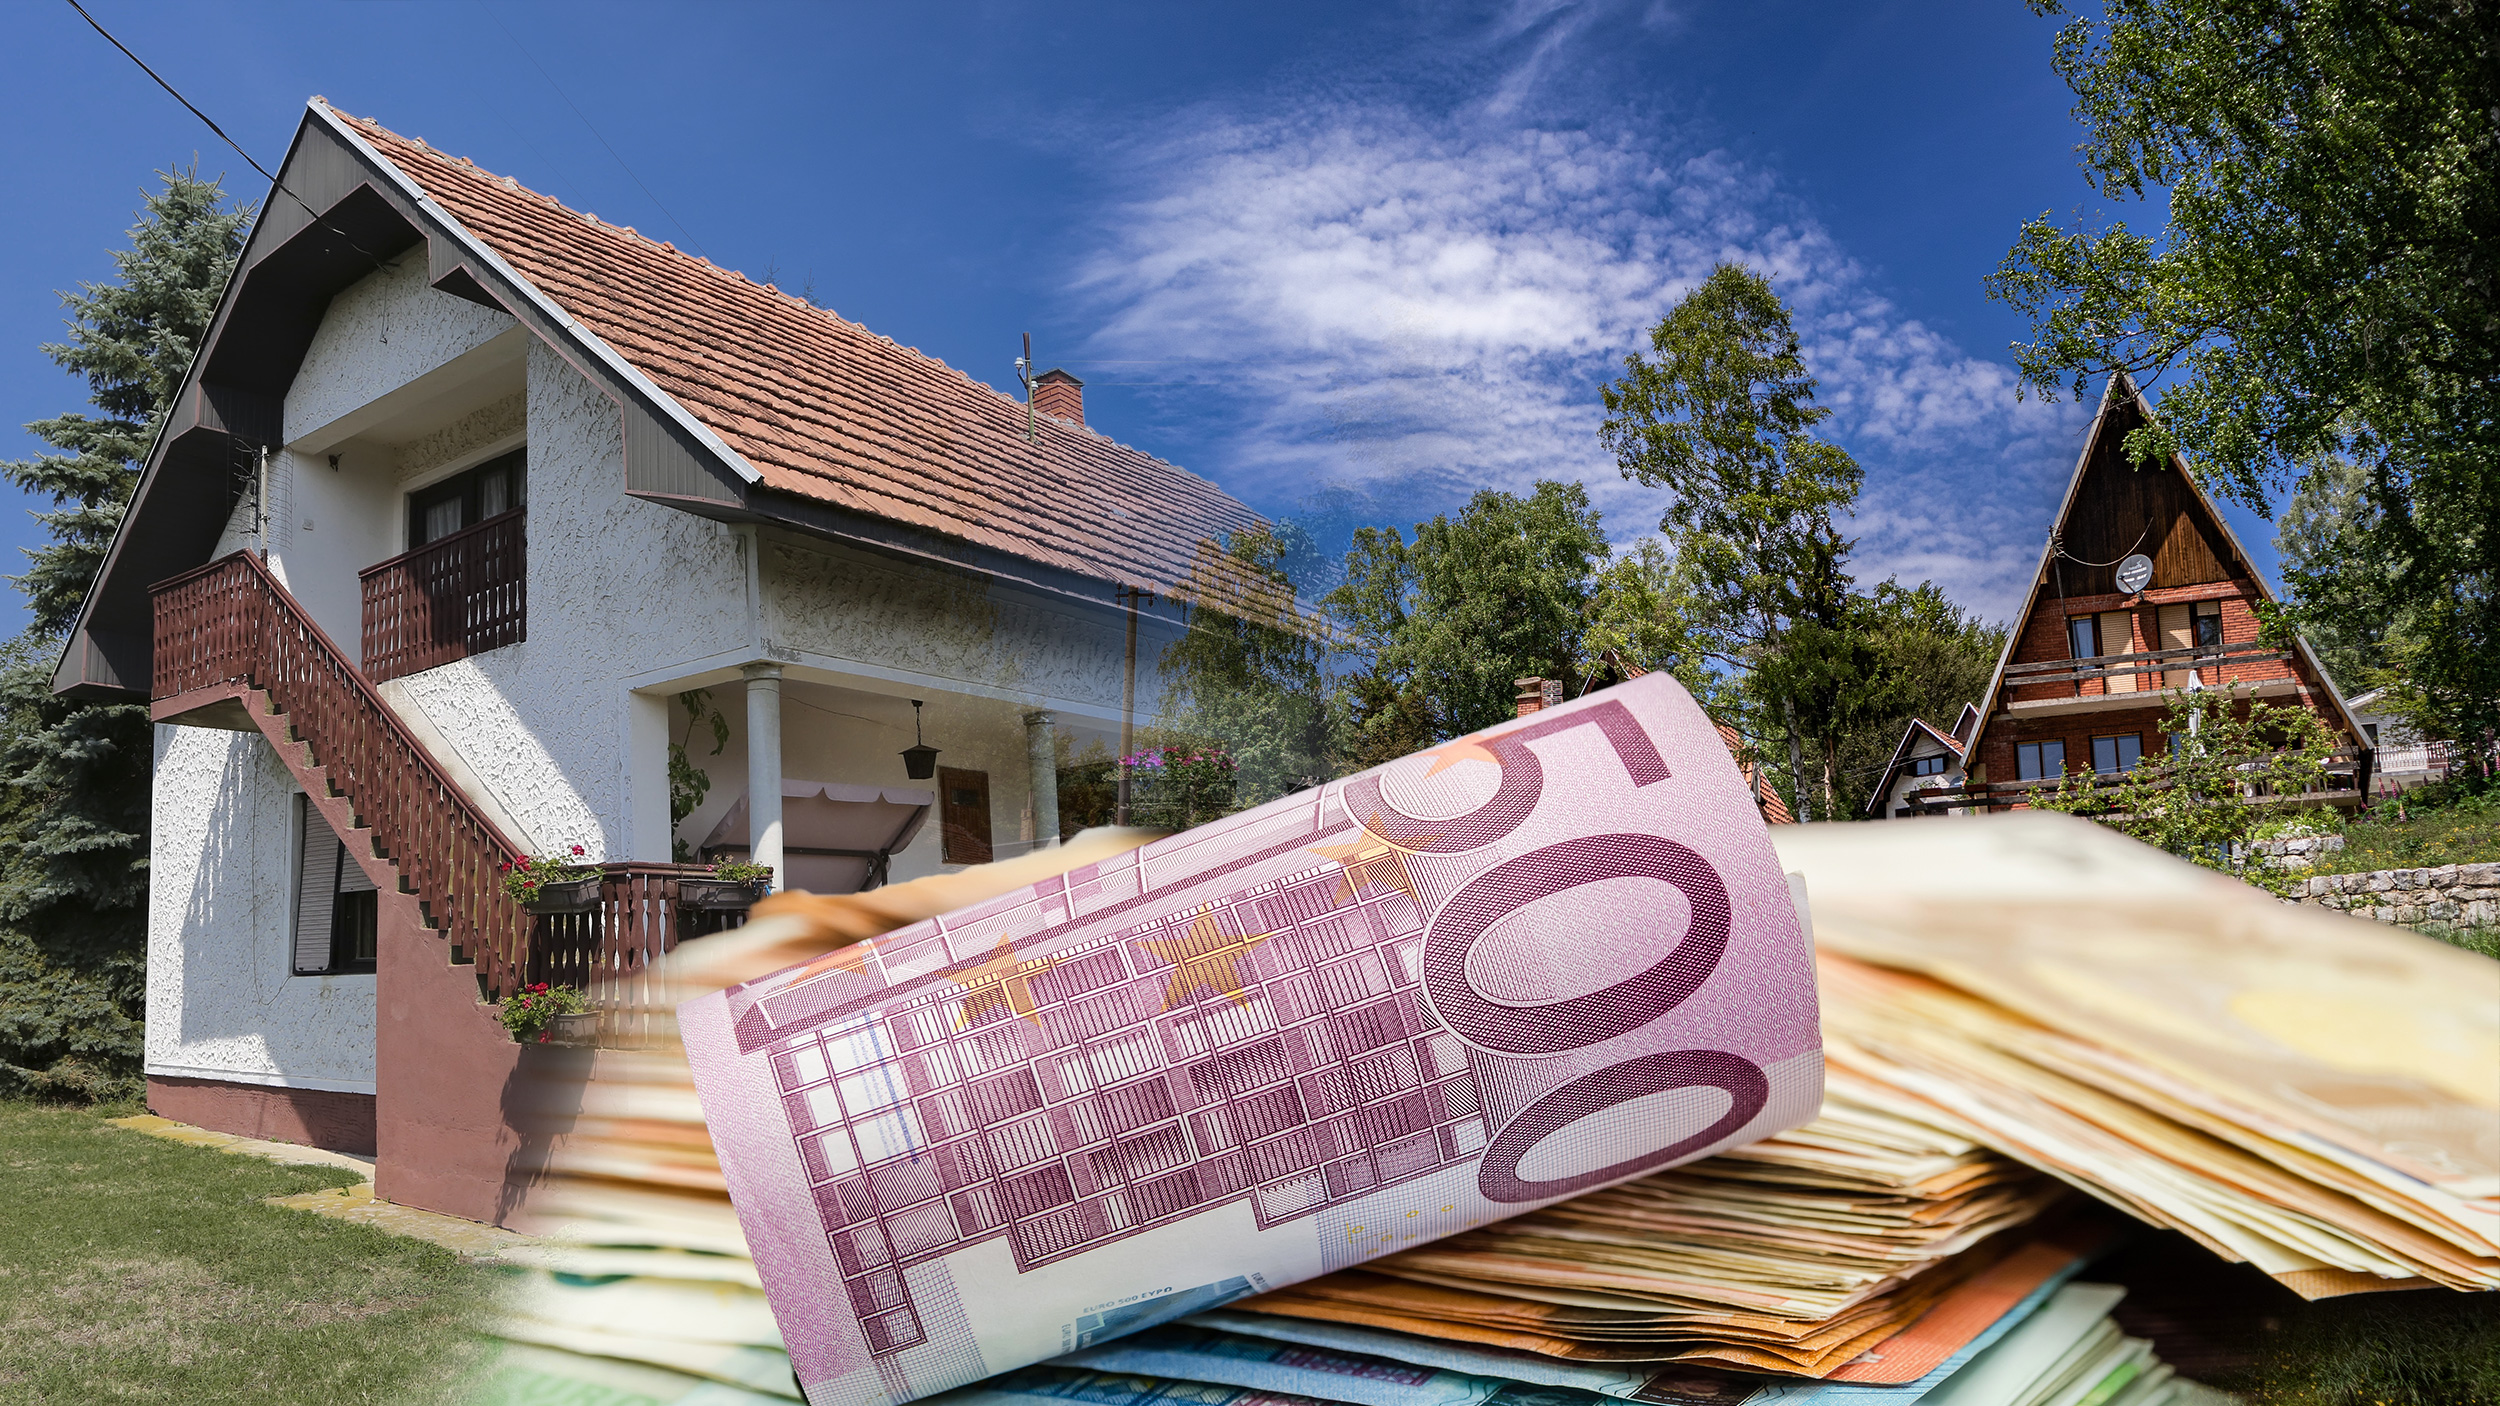 Proverili smo cene kvadrata u 3 najpopularnije banje u Srbiji: Kuće na jednoj od posećenijih lokacija su baš povoljne